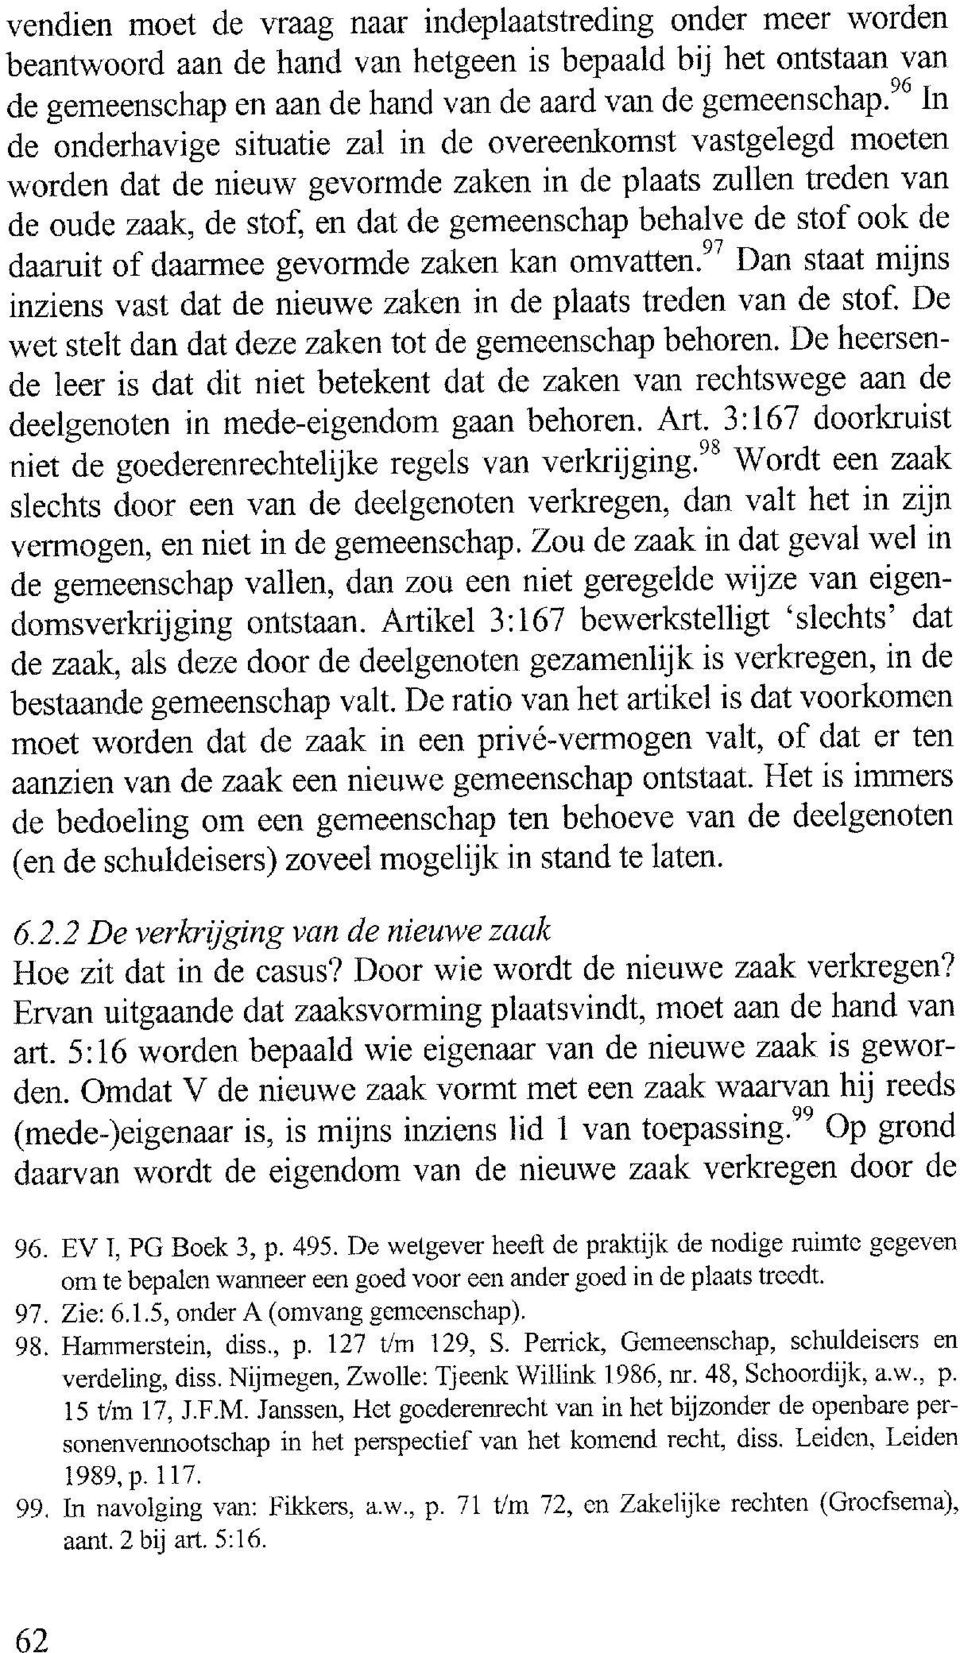 48, Schoordijk, a.w., p. 15 t/m 17, J.F.M. Janssen, Het goederenrecht van in het bijzonder de openbare personenvennootschap in het perspectief van het komend recht, diss. Leiden, Leiden 1989,p.ll7.